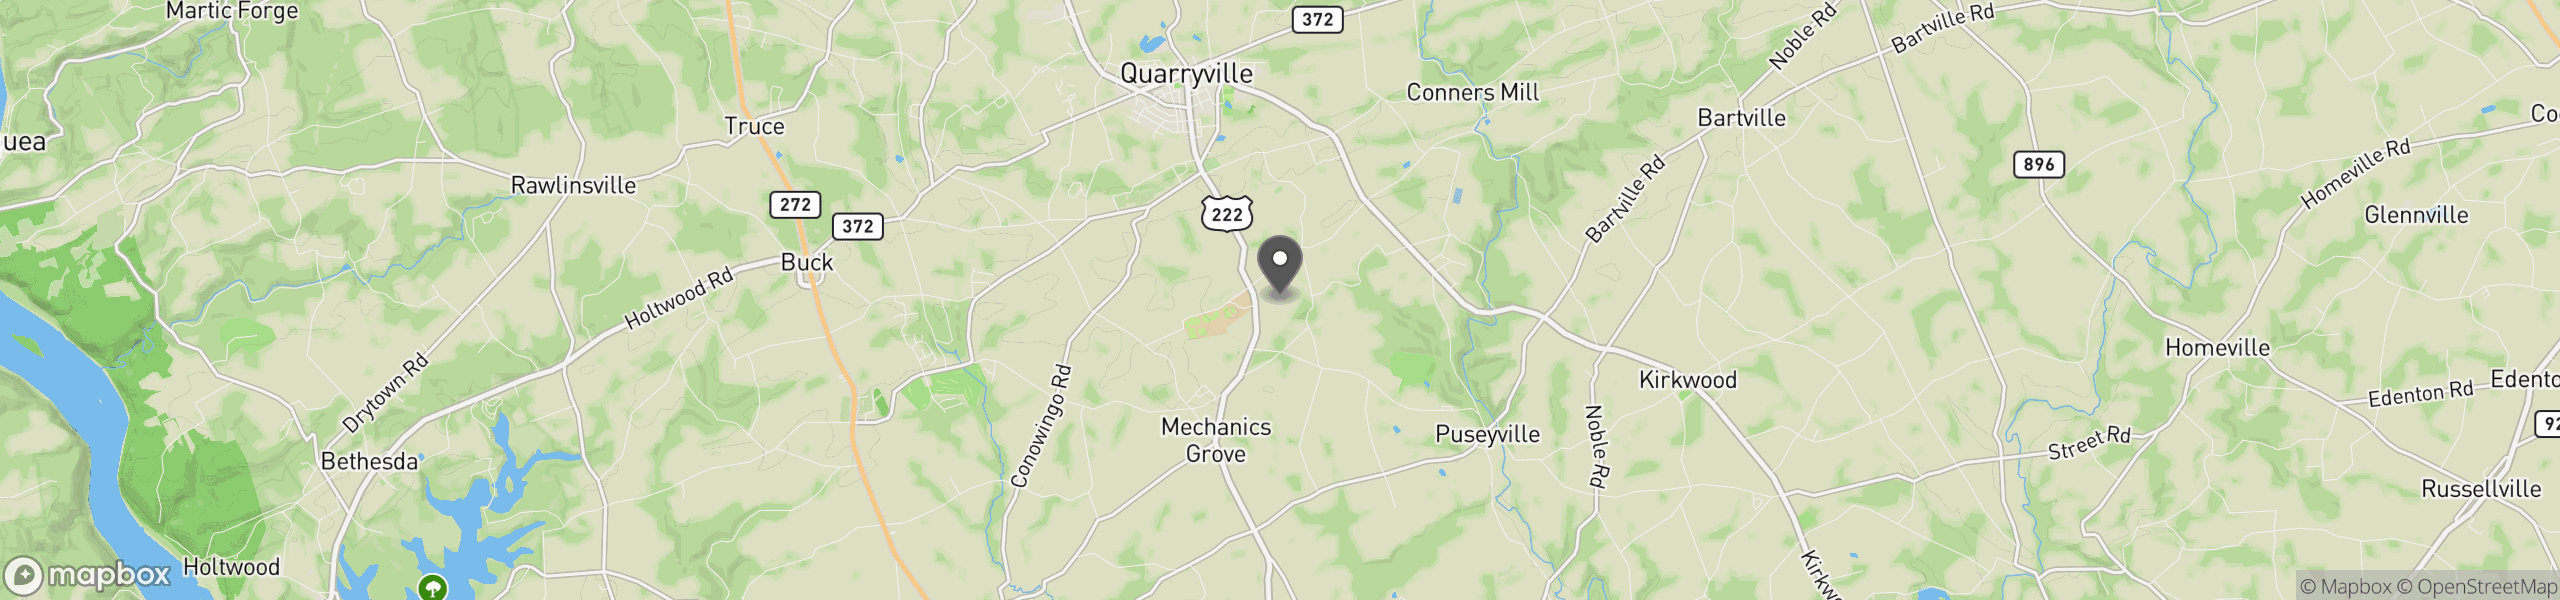 Quarryville, PA 17566